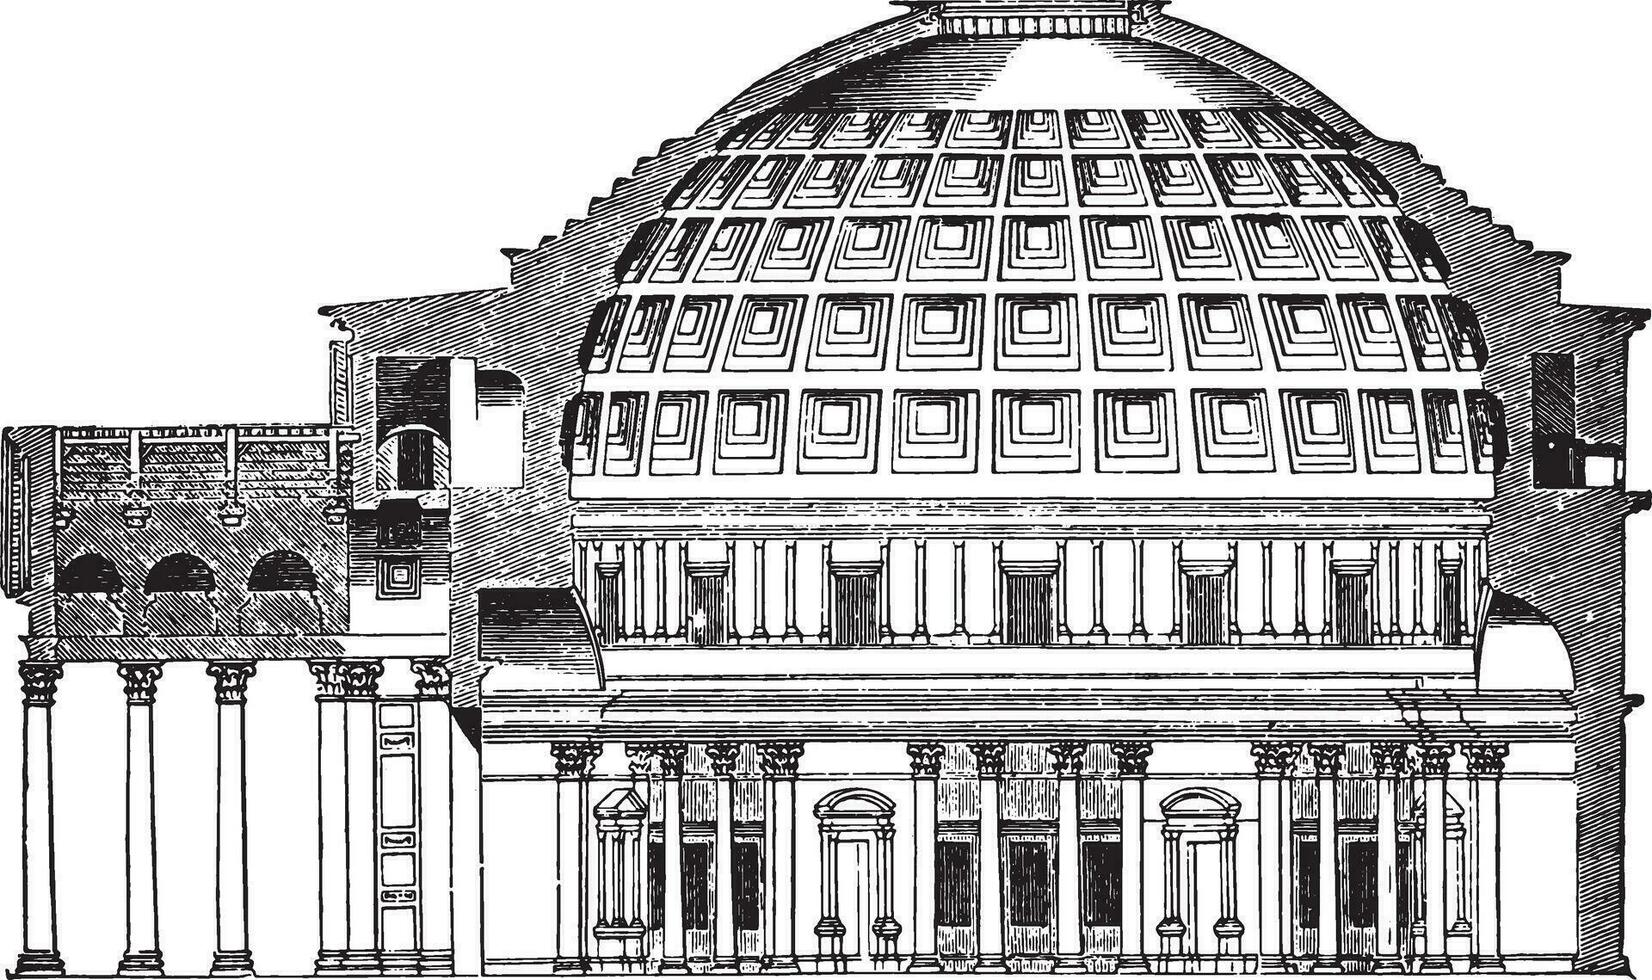 koepel van de pantheon kop in Rome, wijnoogst gravure. vector